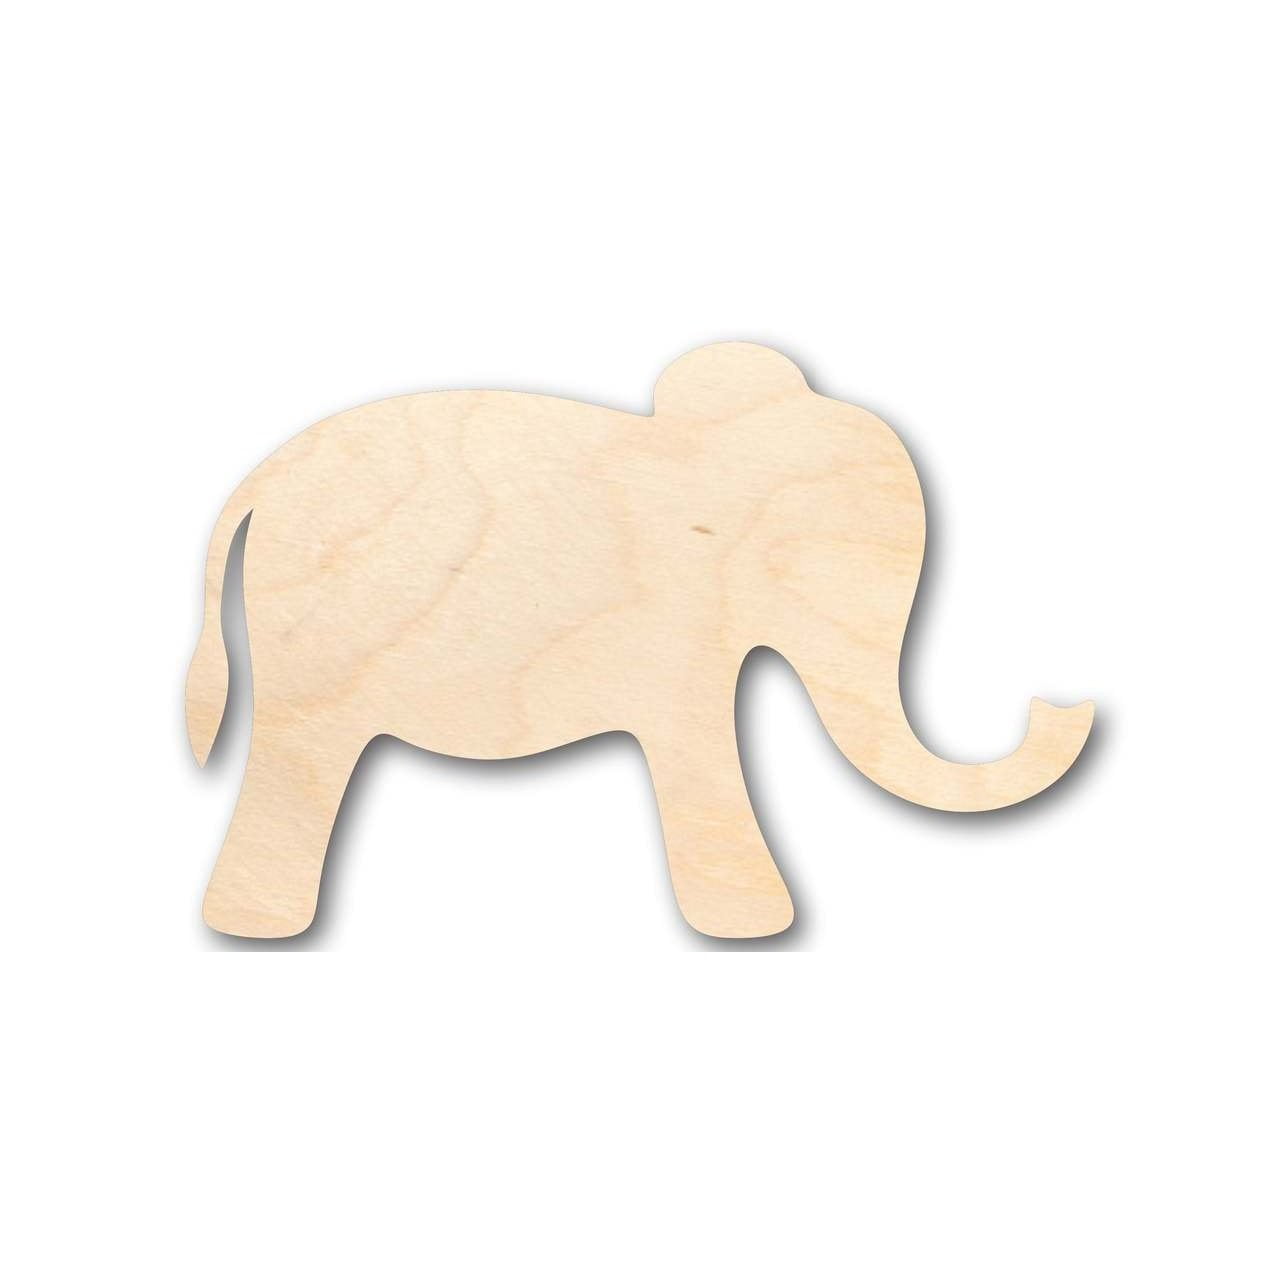 Unfinished Wood Simple Elephant Shape - Animal - Wildlife - Craft - up to  24